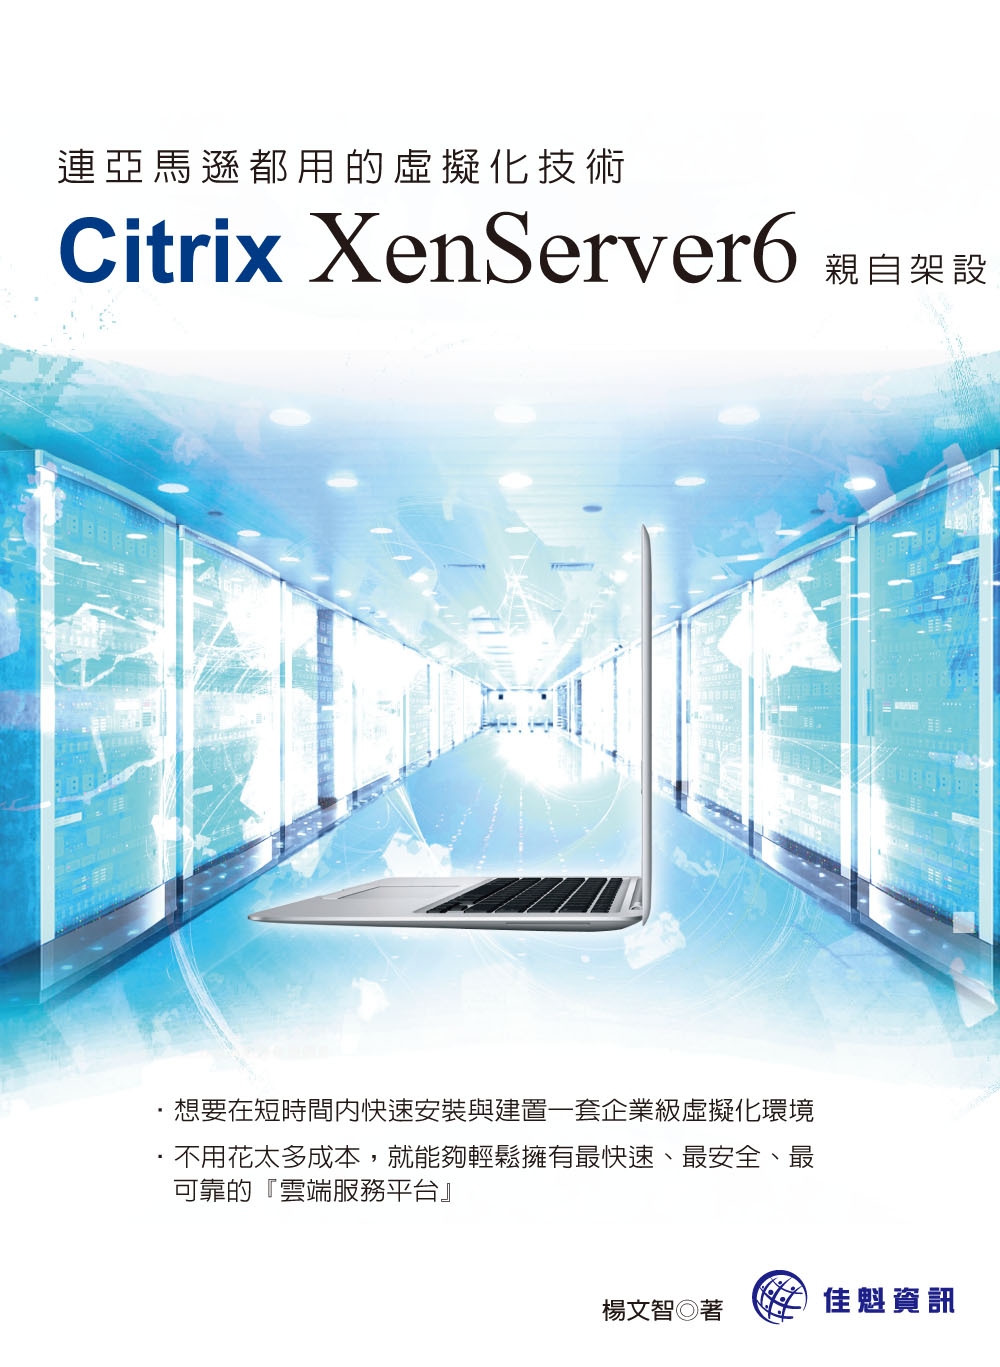 連亞馬遜都用的虛擬化技術：Citrix XenServer6...